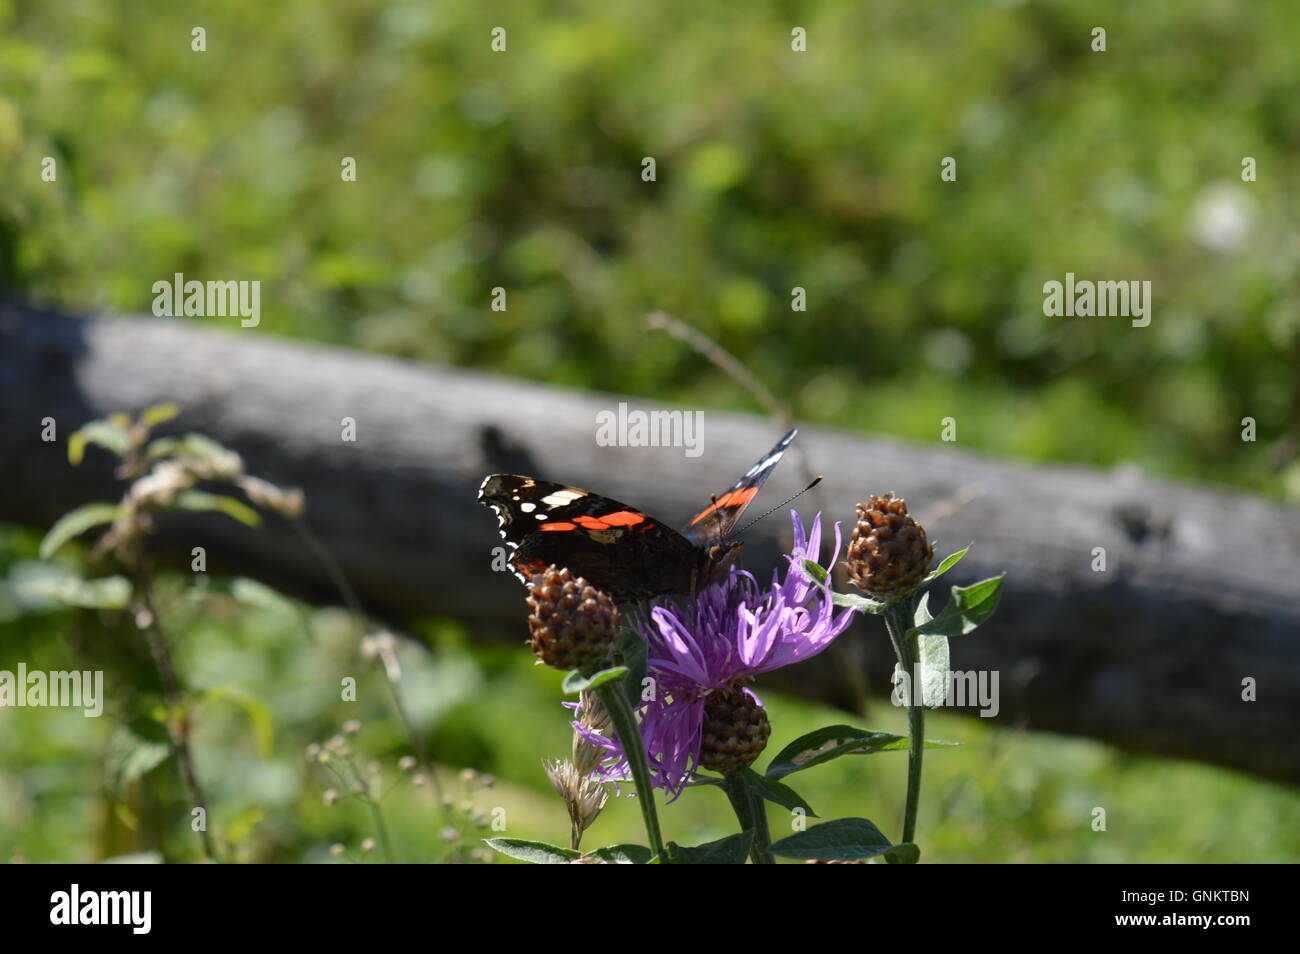 Close up of a black papillon sur une fleur sauvage Banque D'Images